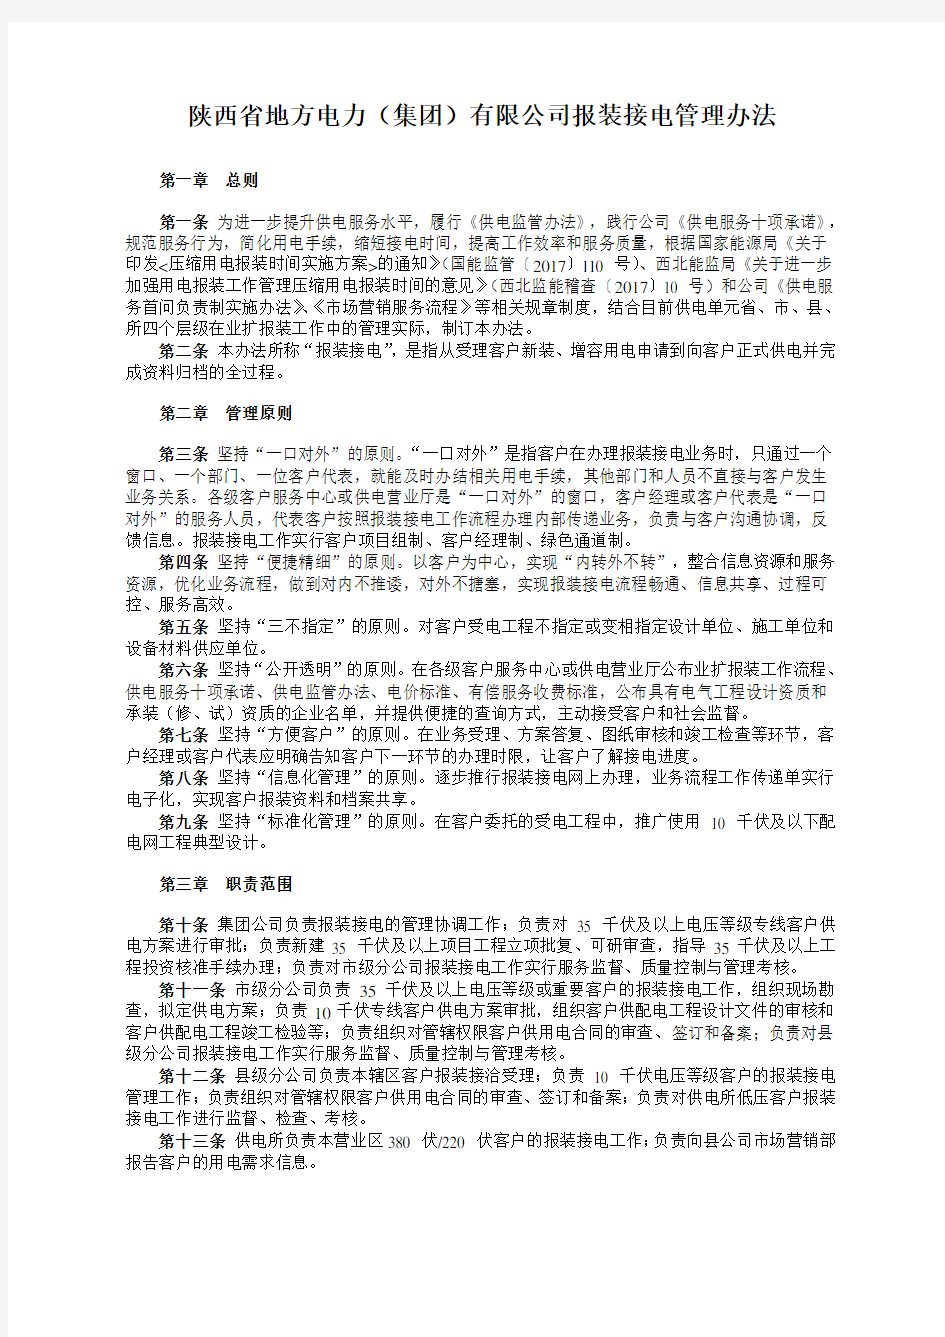 陕西省地方电力(集团)有限公司报装接电管理办法释义